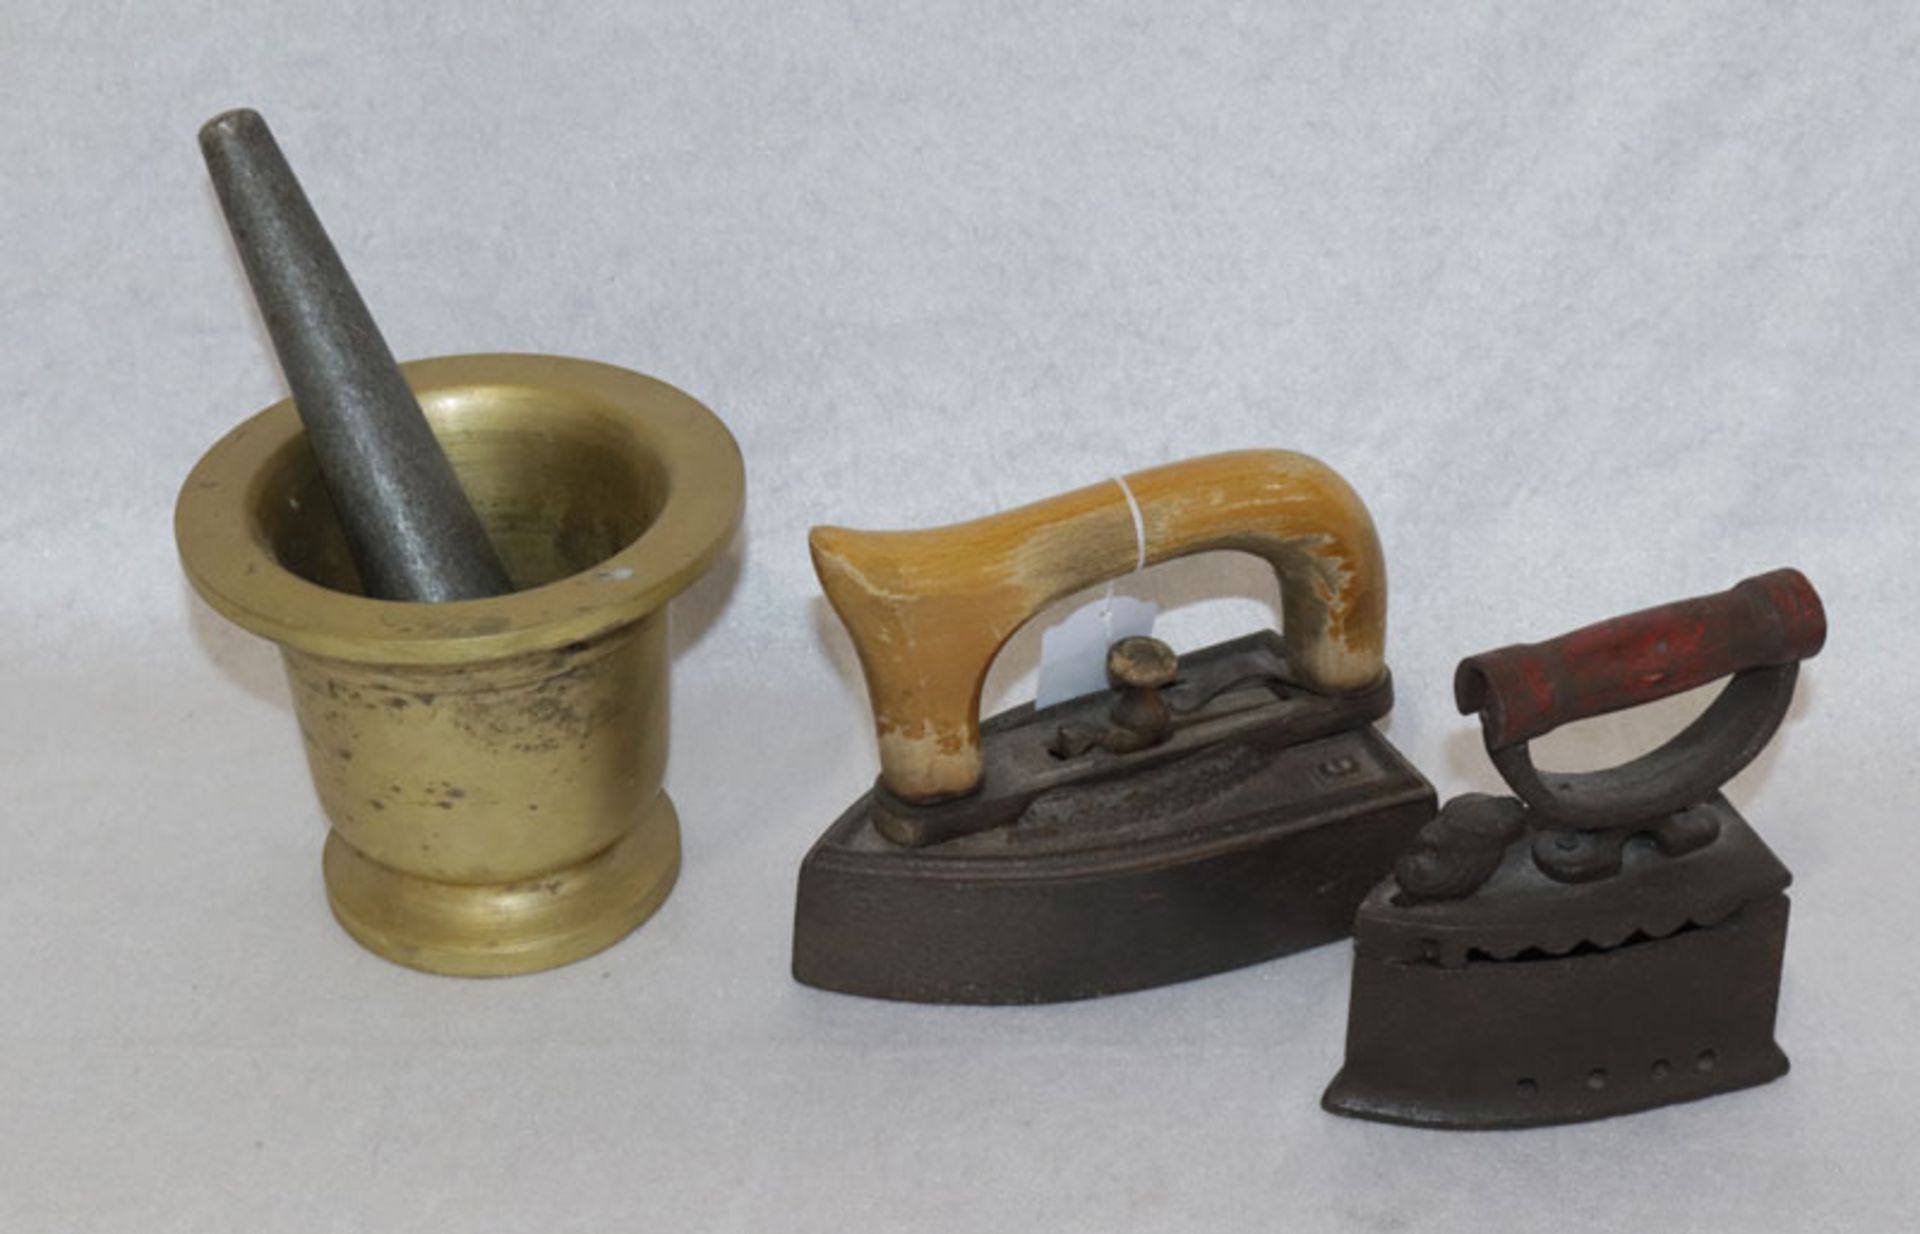 Konvolut: Metall Mörser mit Stößel, H 12 cm, D 14 cm, und 2 antike Bügeleisen mit Holzgriffen, H